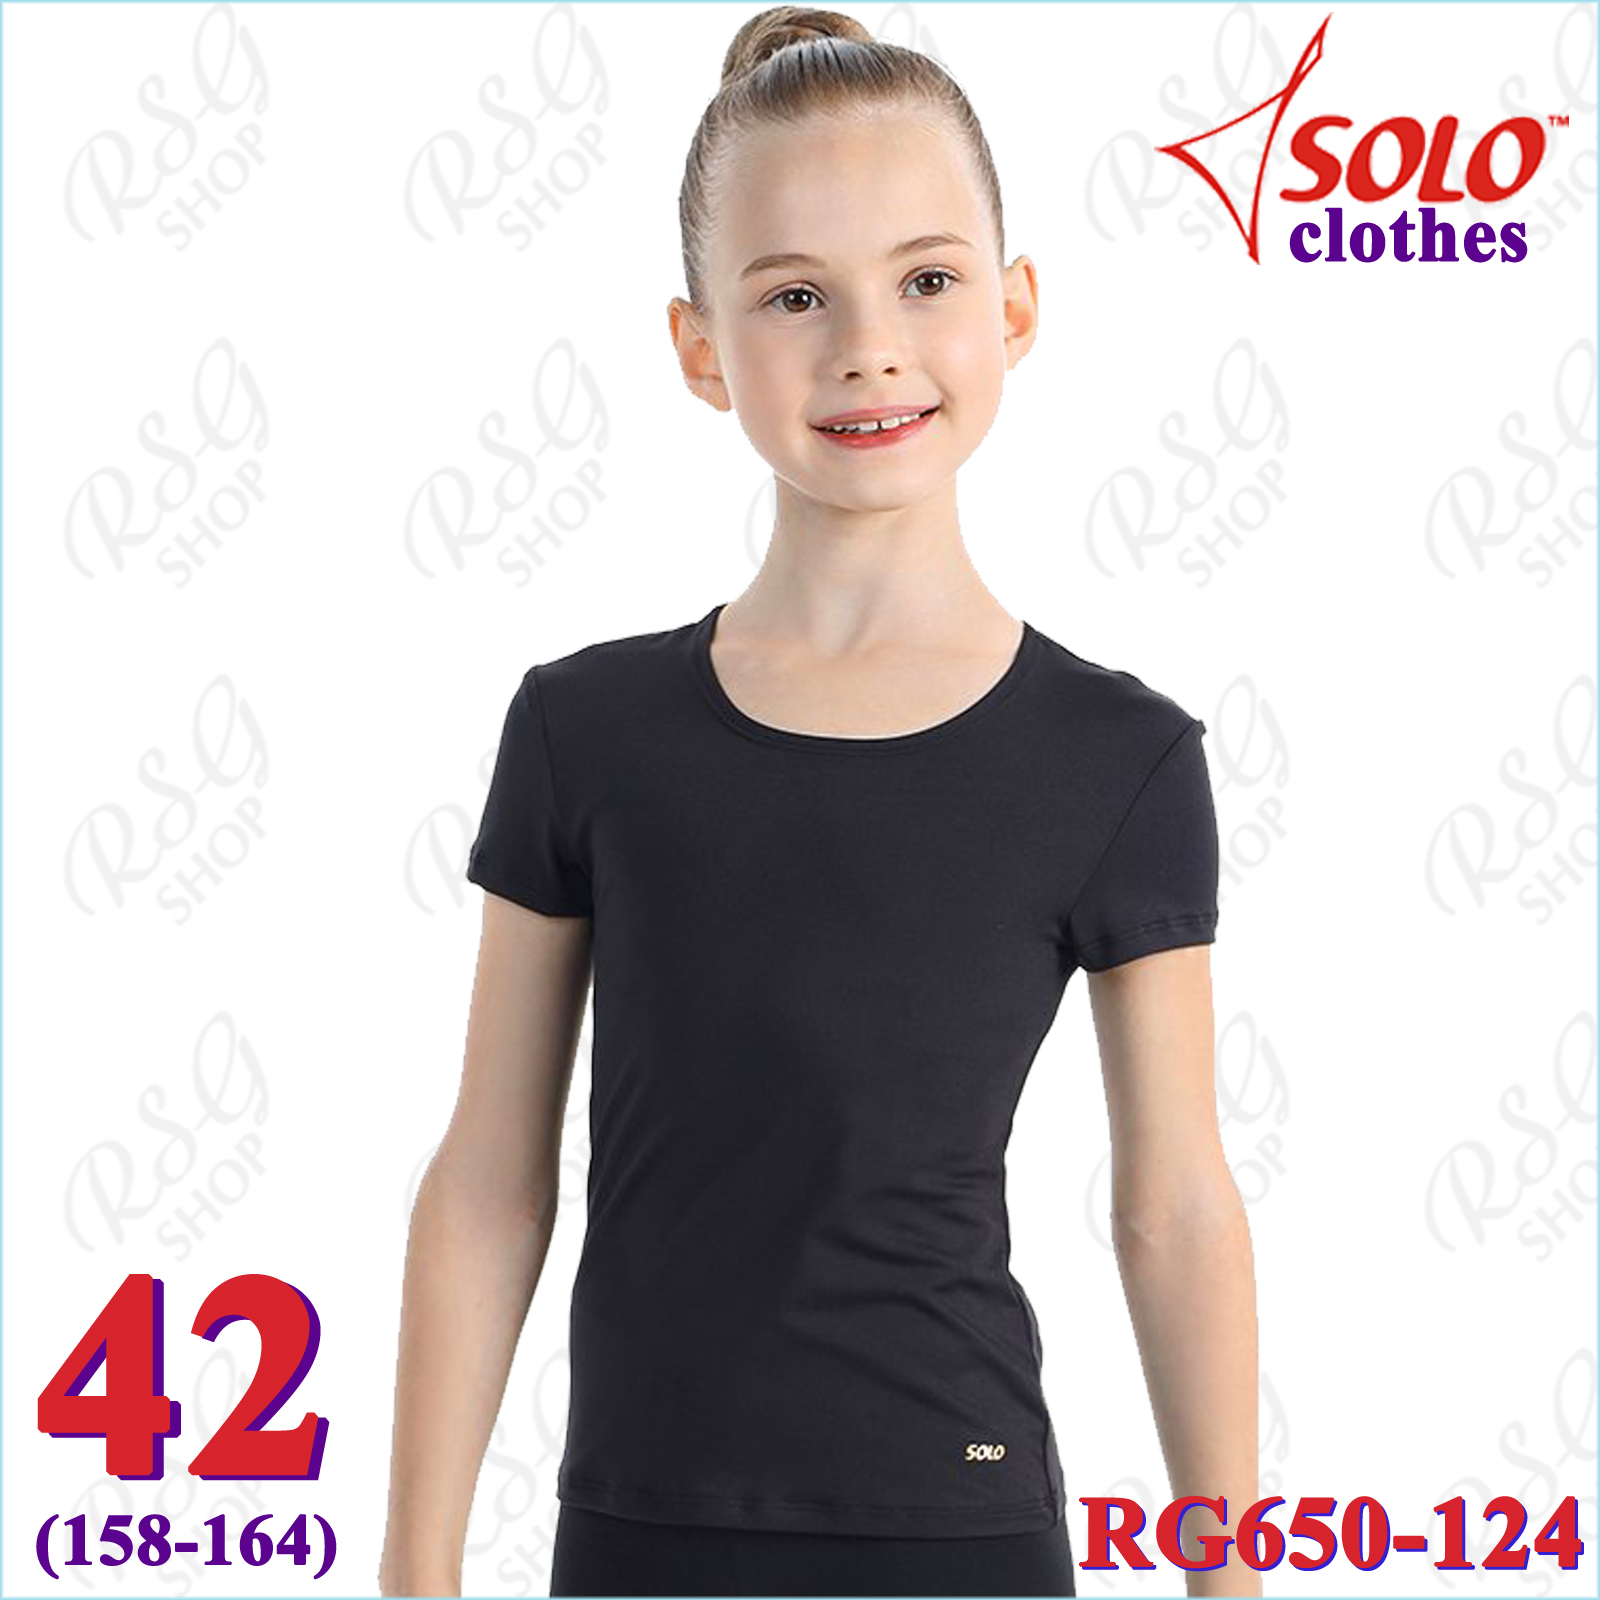 T-Shirt Solo Gr. 42 (158-164) col. Black Art. RG650-124-42